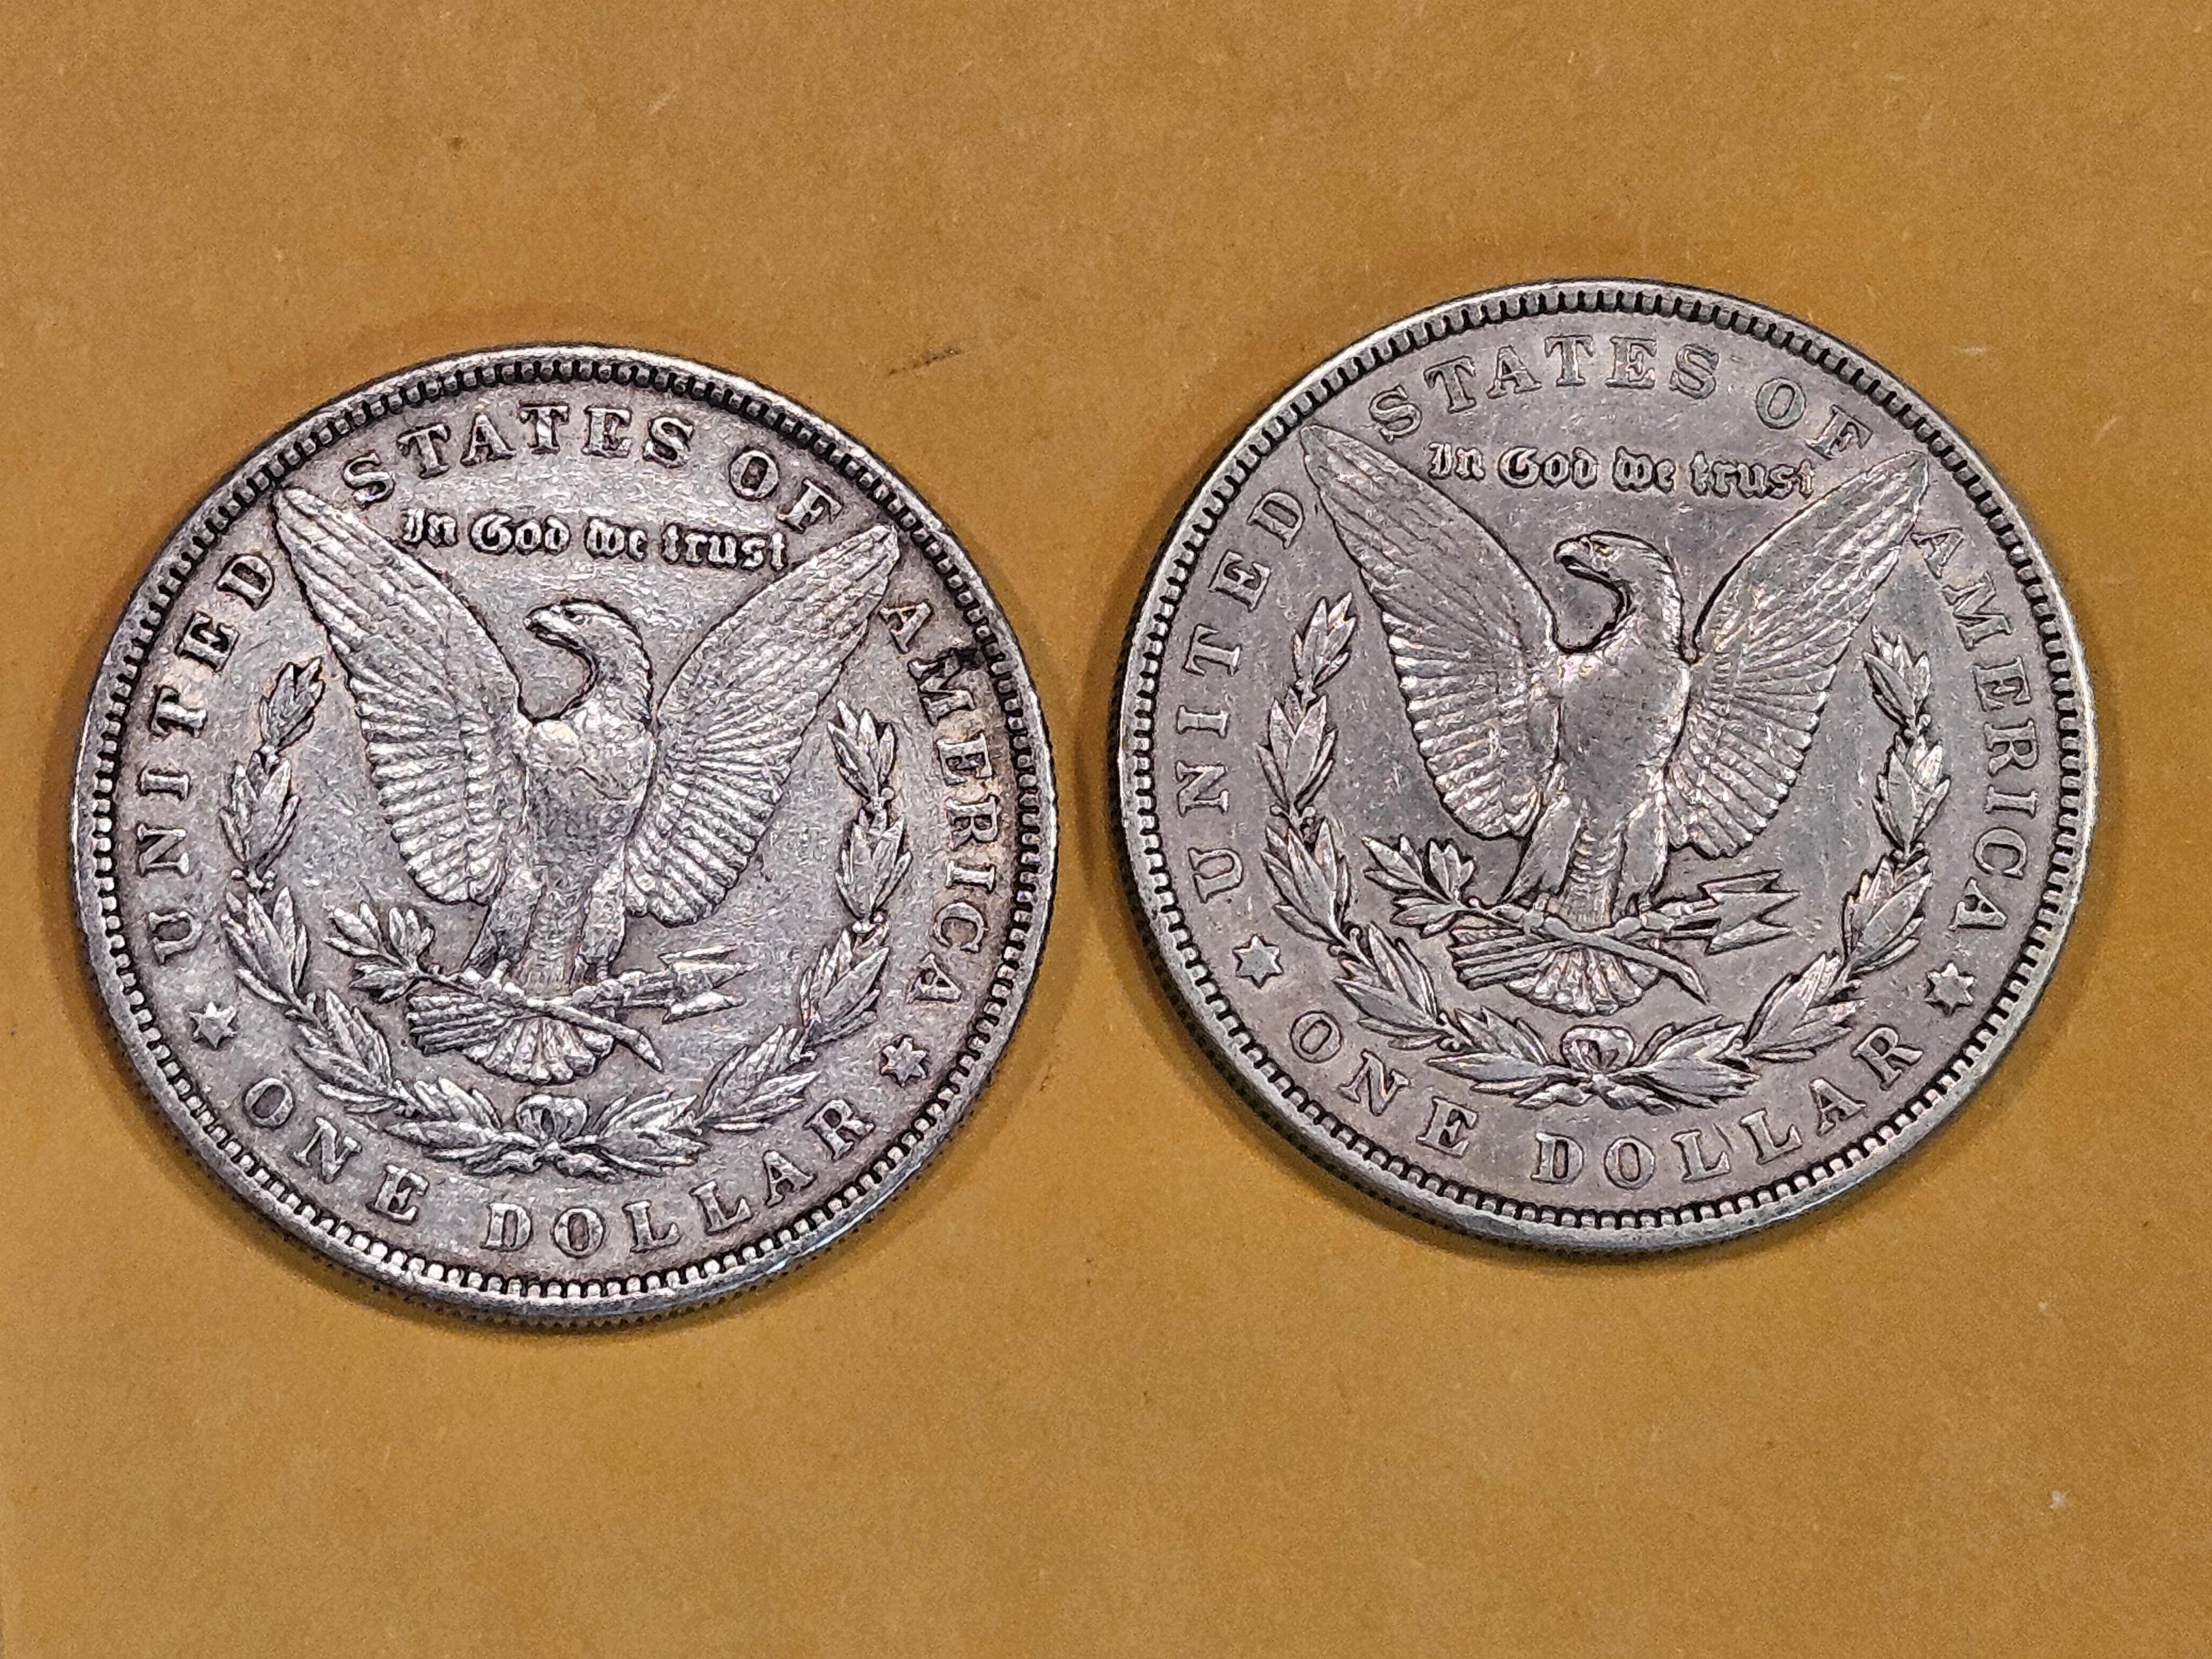 1885 and 1902 Morgan Dollars